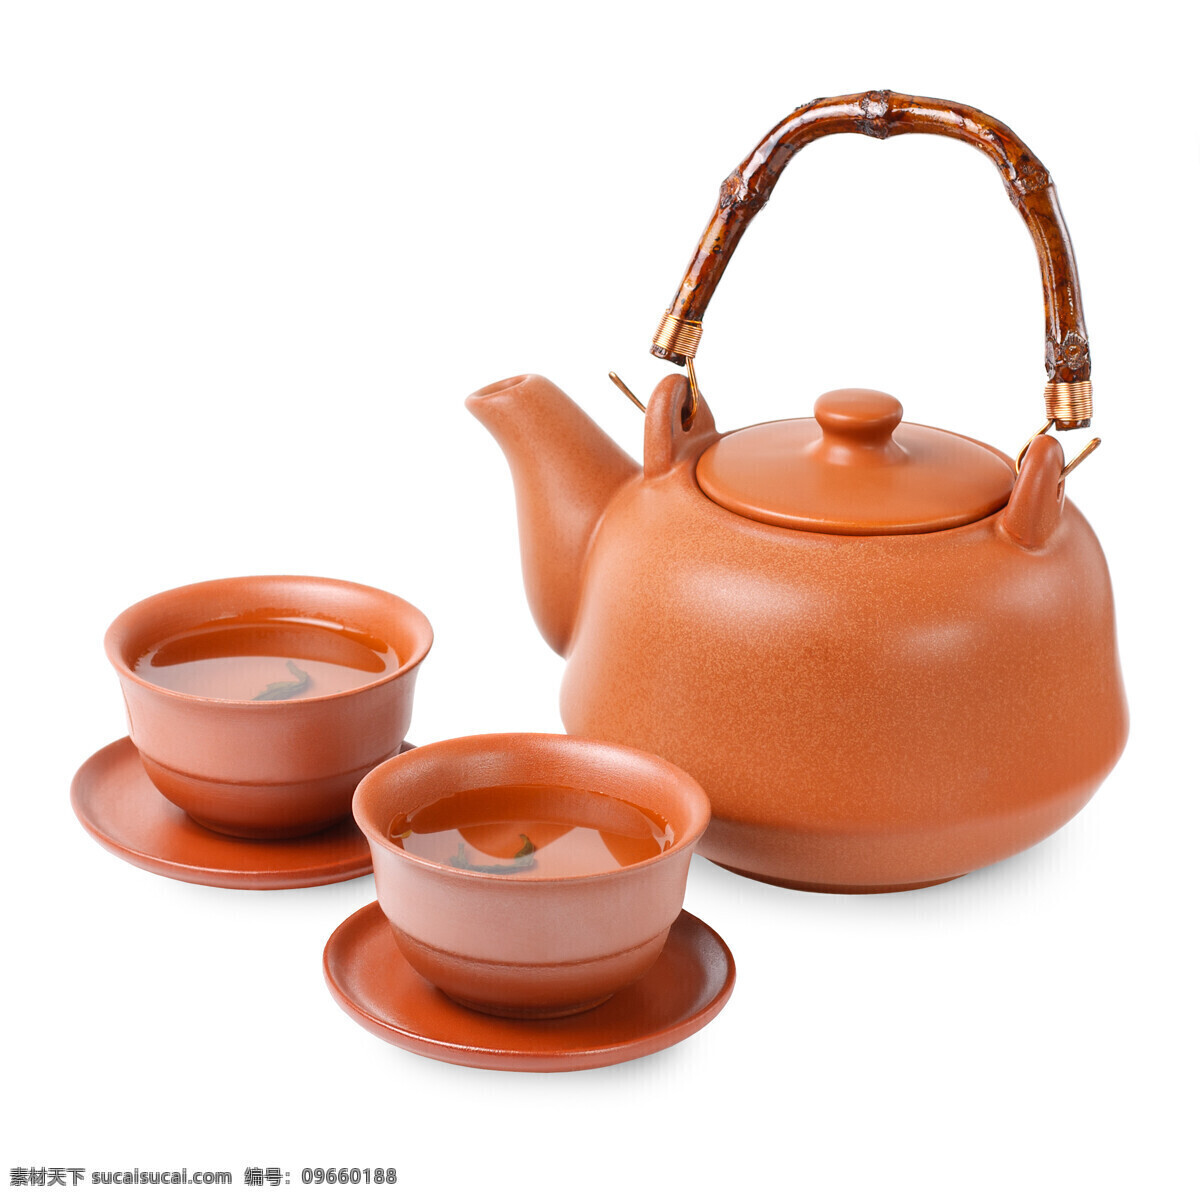 中国 传统 紫砂壶 特色 茶壶 餐饮美食 餐具厨具